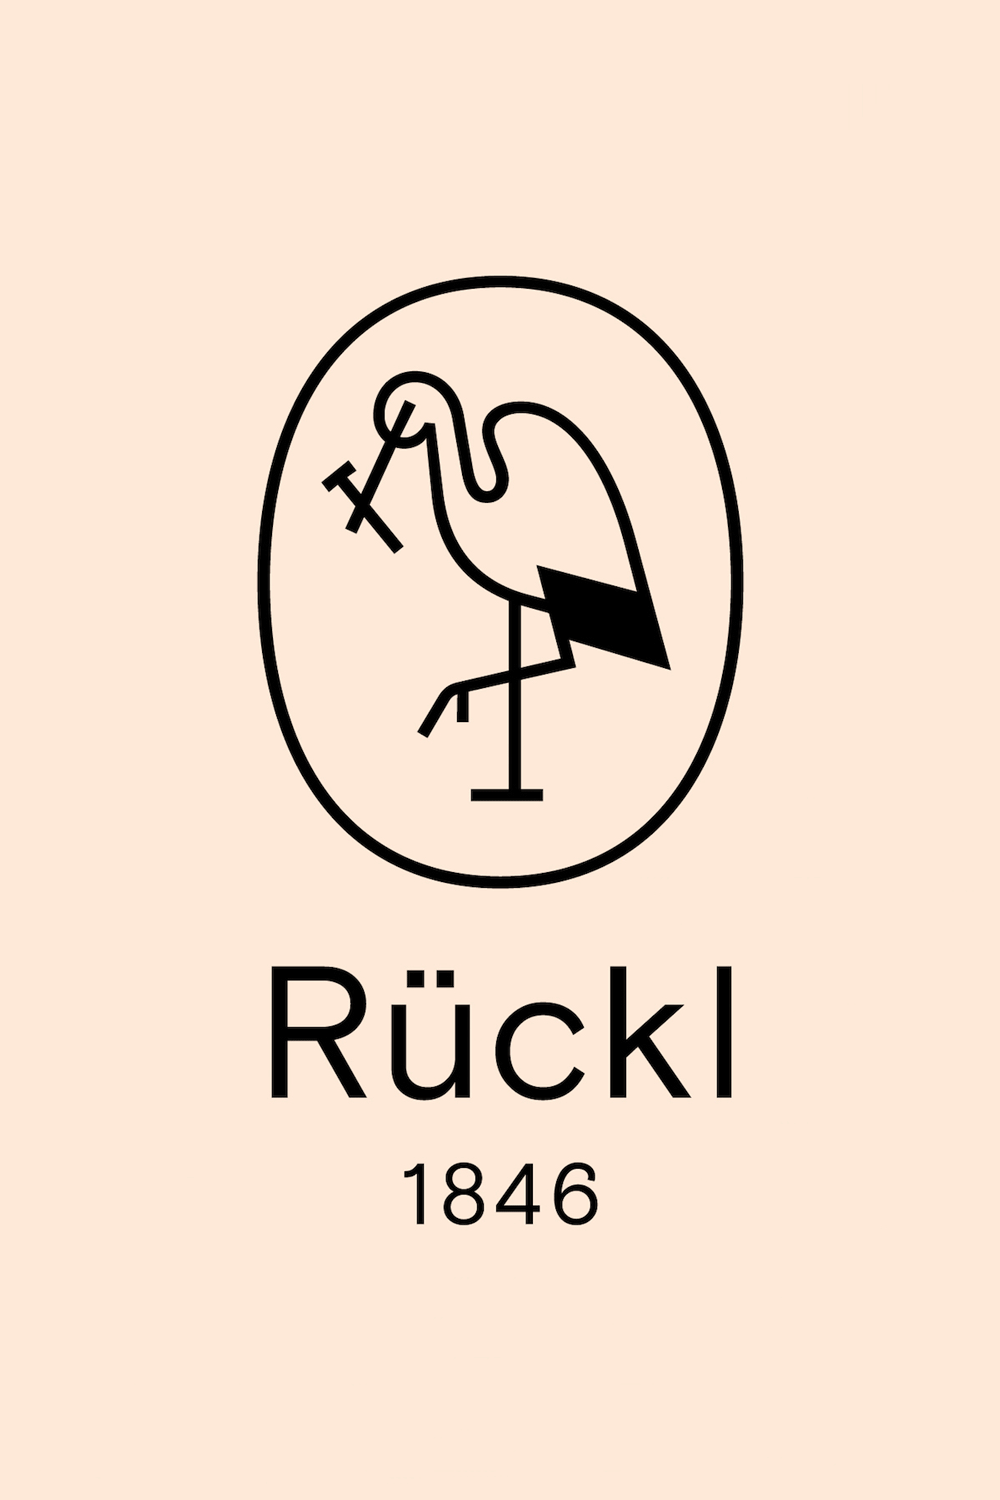 New Logo and Identity for Rückl by Studio Najbrt